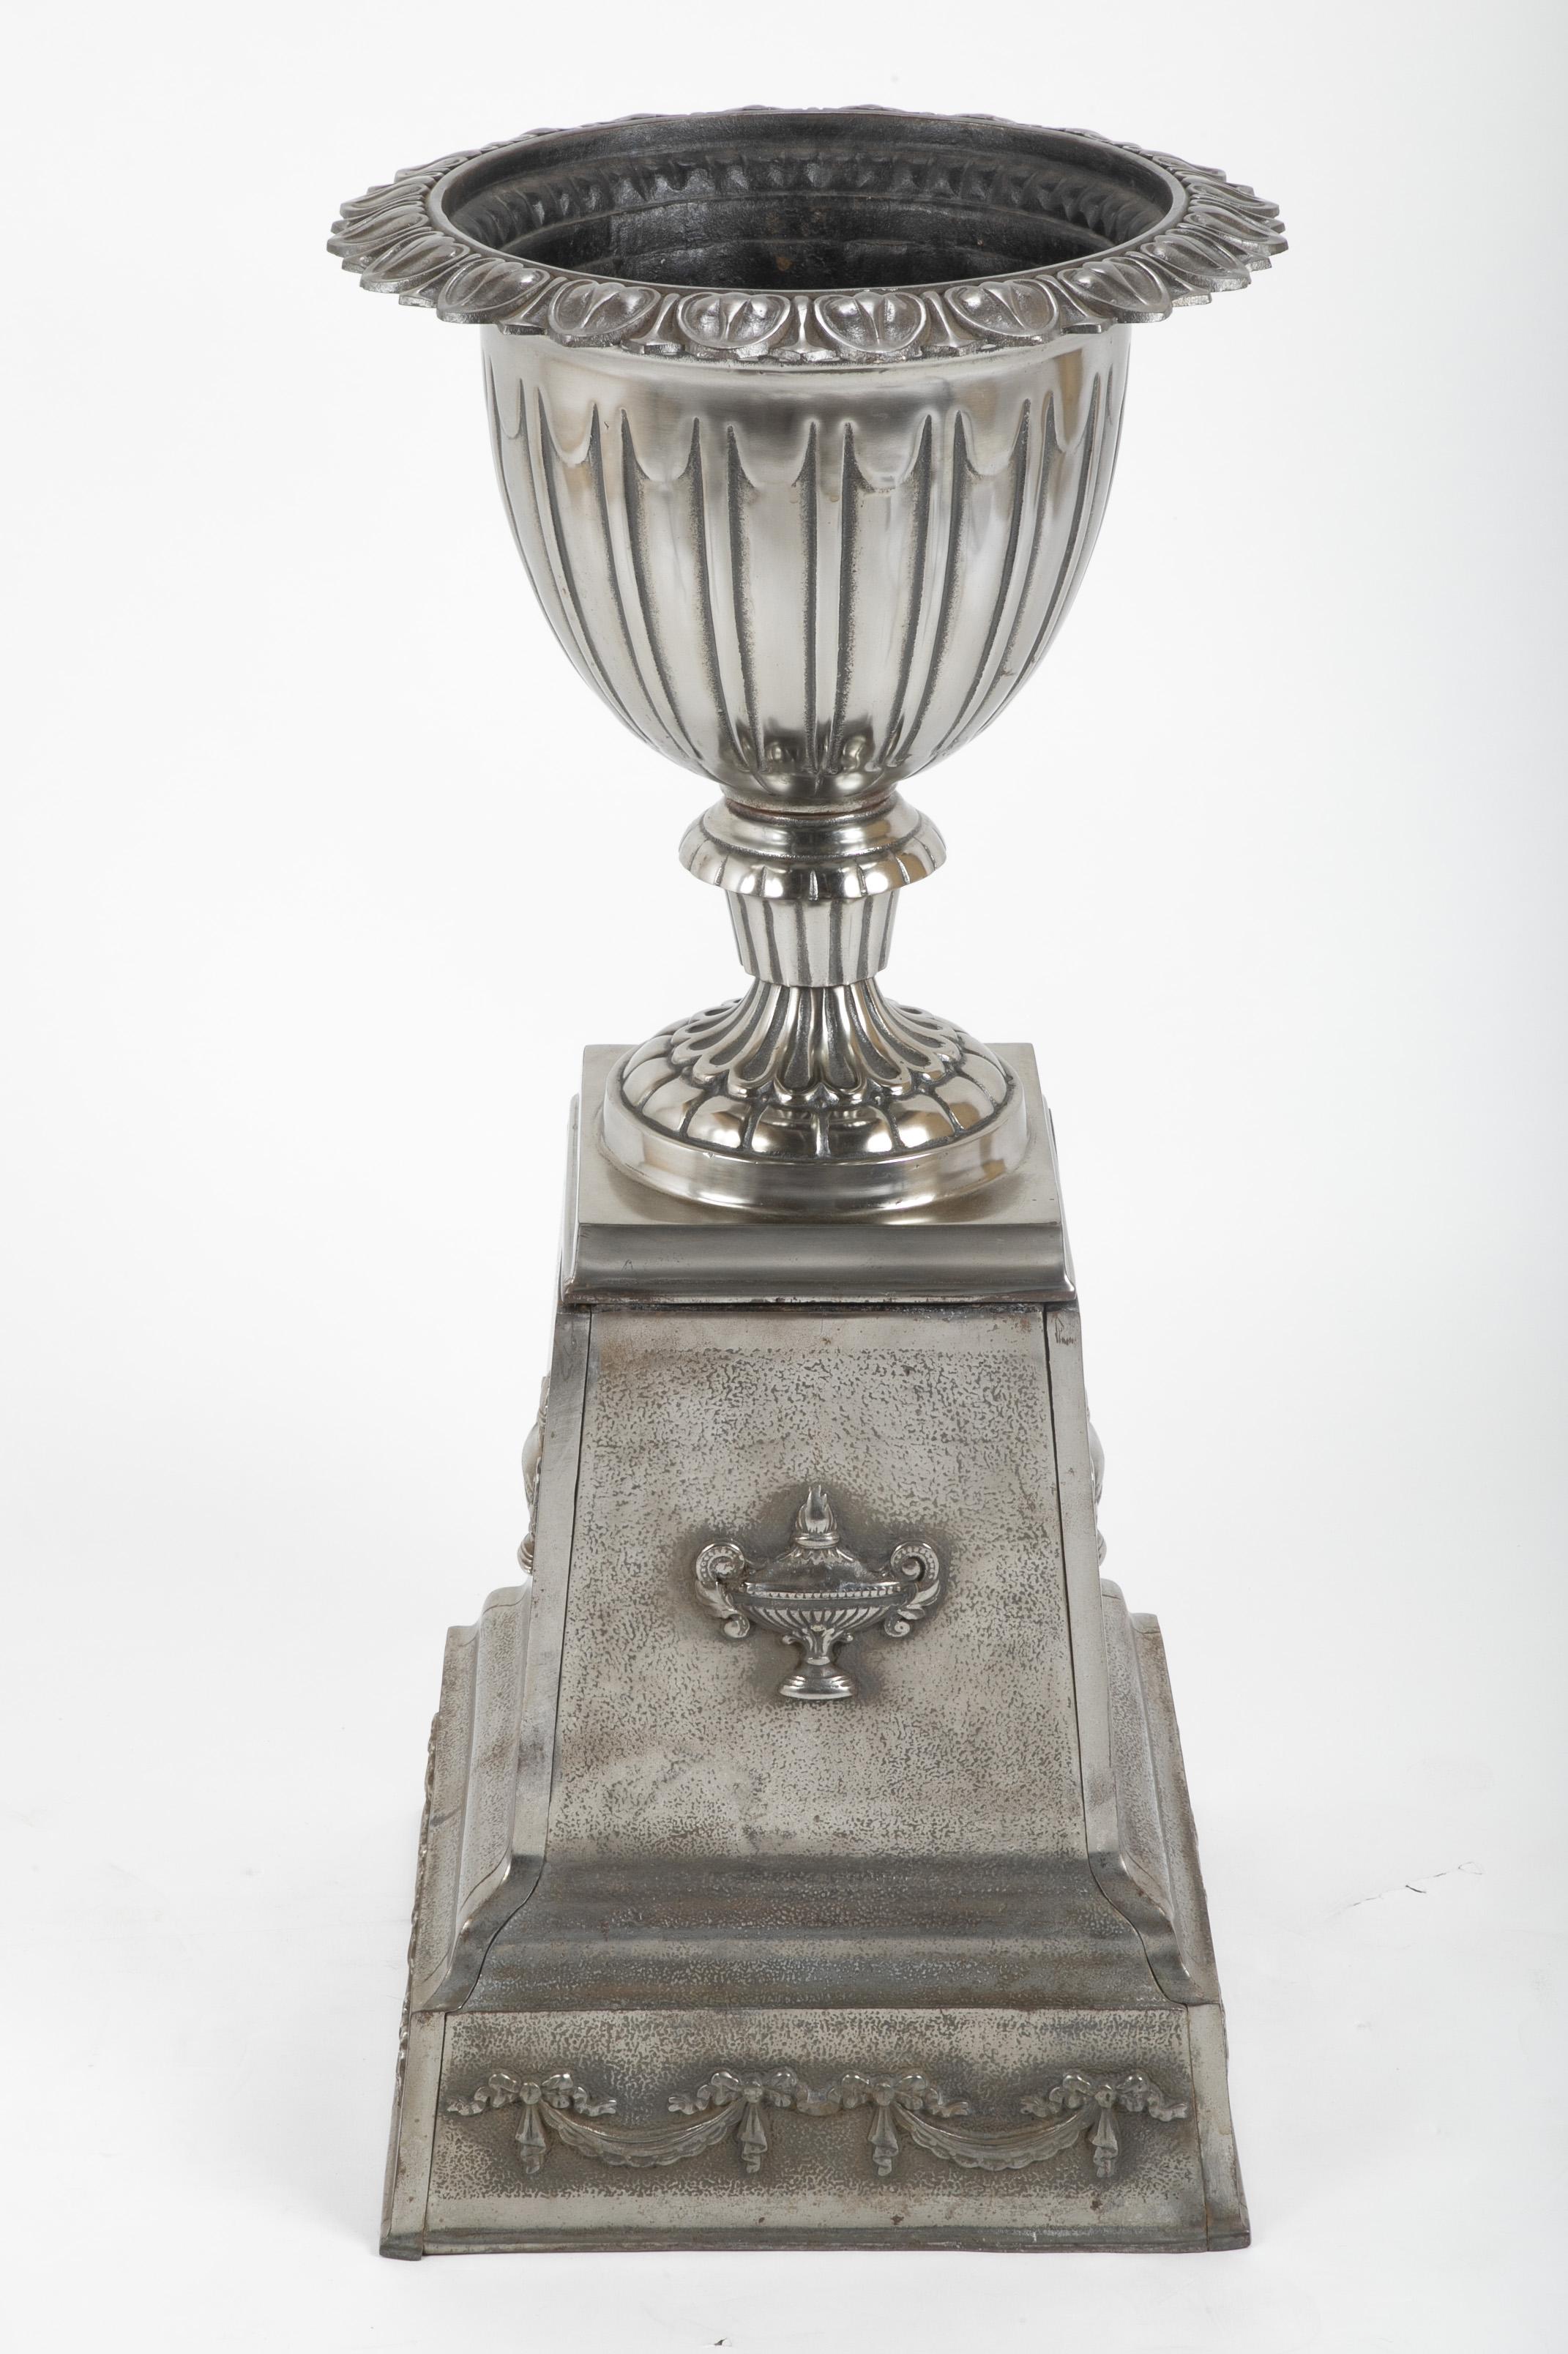 A polished cast steel garden urn. American, circa 1890.